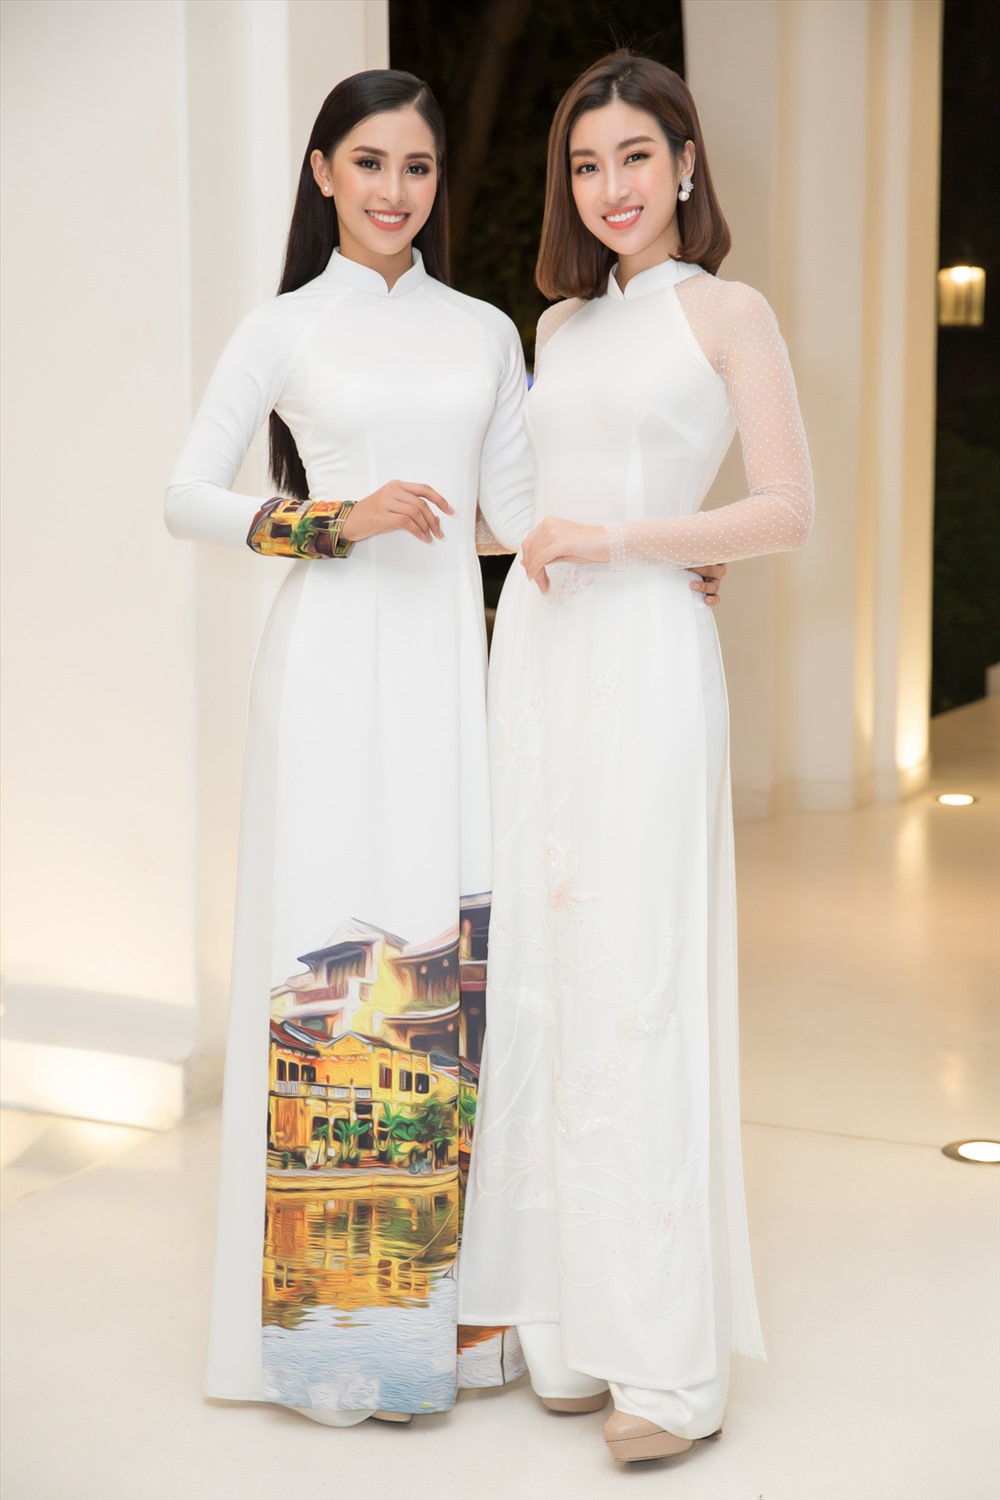 Đây cũng là lần đầu tiên Hoa hậu Mỹ Linh và Tiểu Vy cùng xuất hiện trong một sự kiện văn hoá ý nghĩa dù trước đó thường xuyên làm việc và gặp gỡ nhau. Ảnh: Hải Nguyễn.